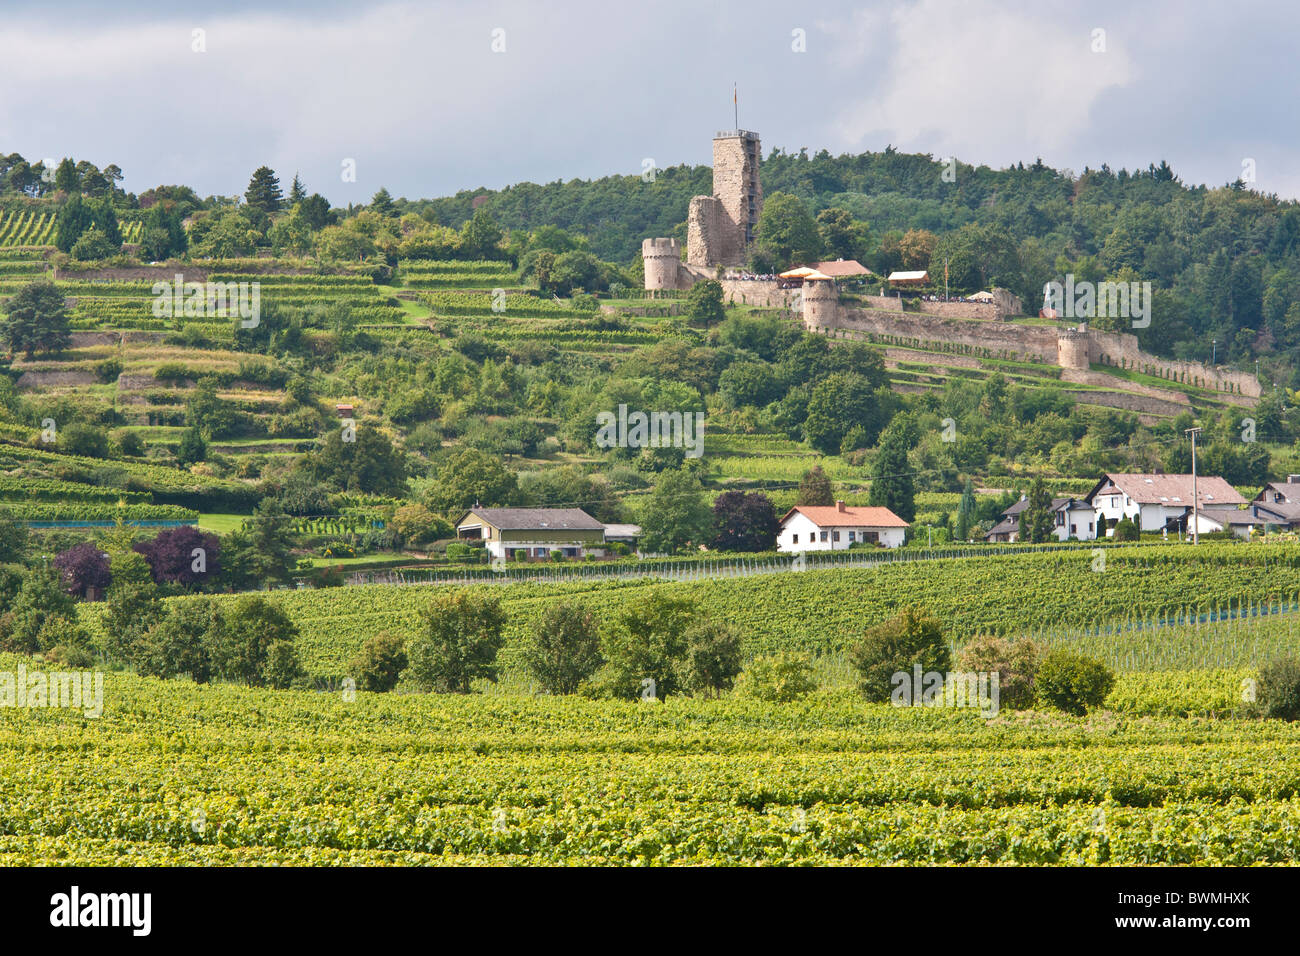 Vignes, PRÈS DE WACHENHEIM, ruine du château WACHTENBURG, ROUTE DES VINS, Palatinat, Rhénanie-Palatinat, Allemagne Banque D'Images